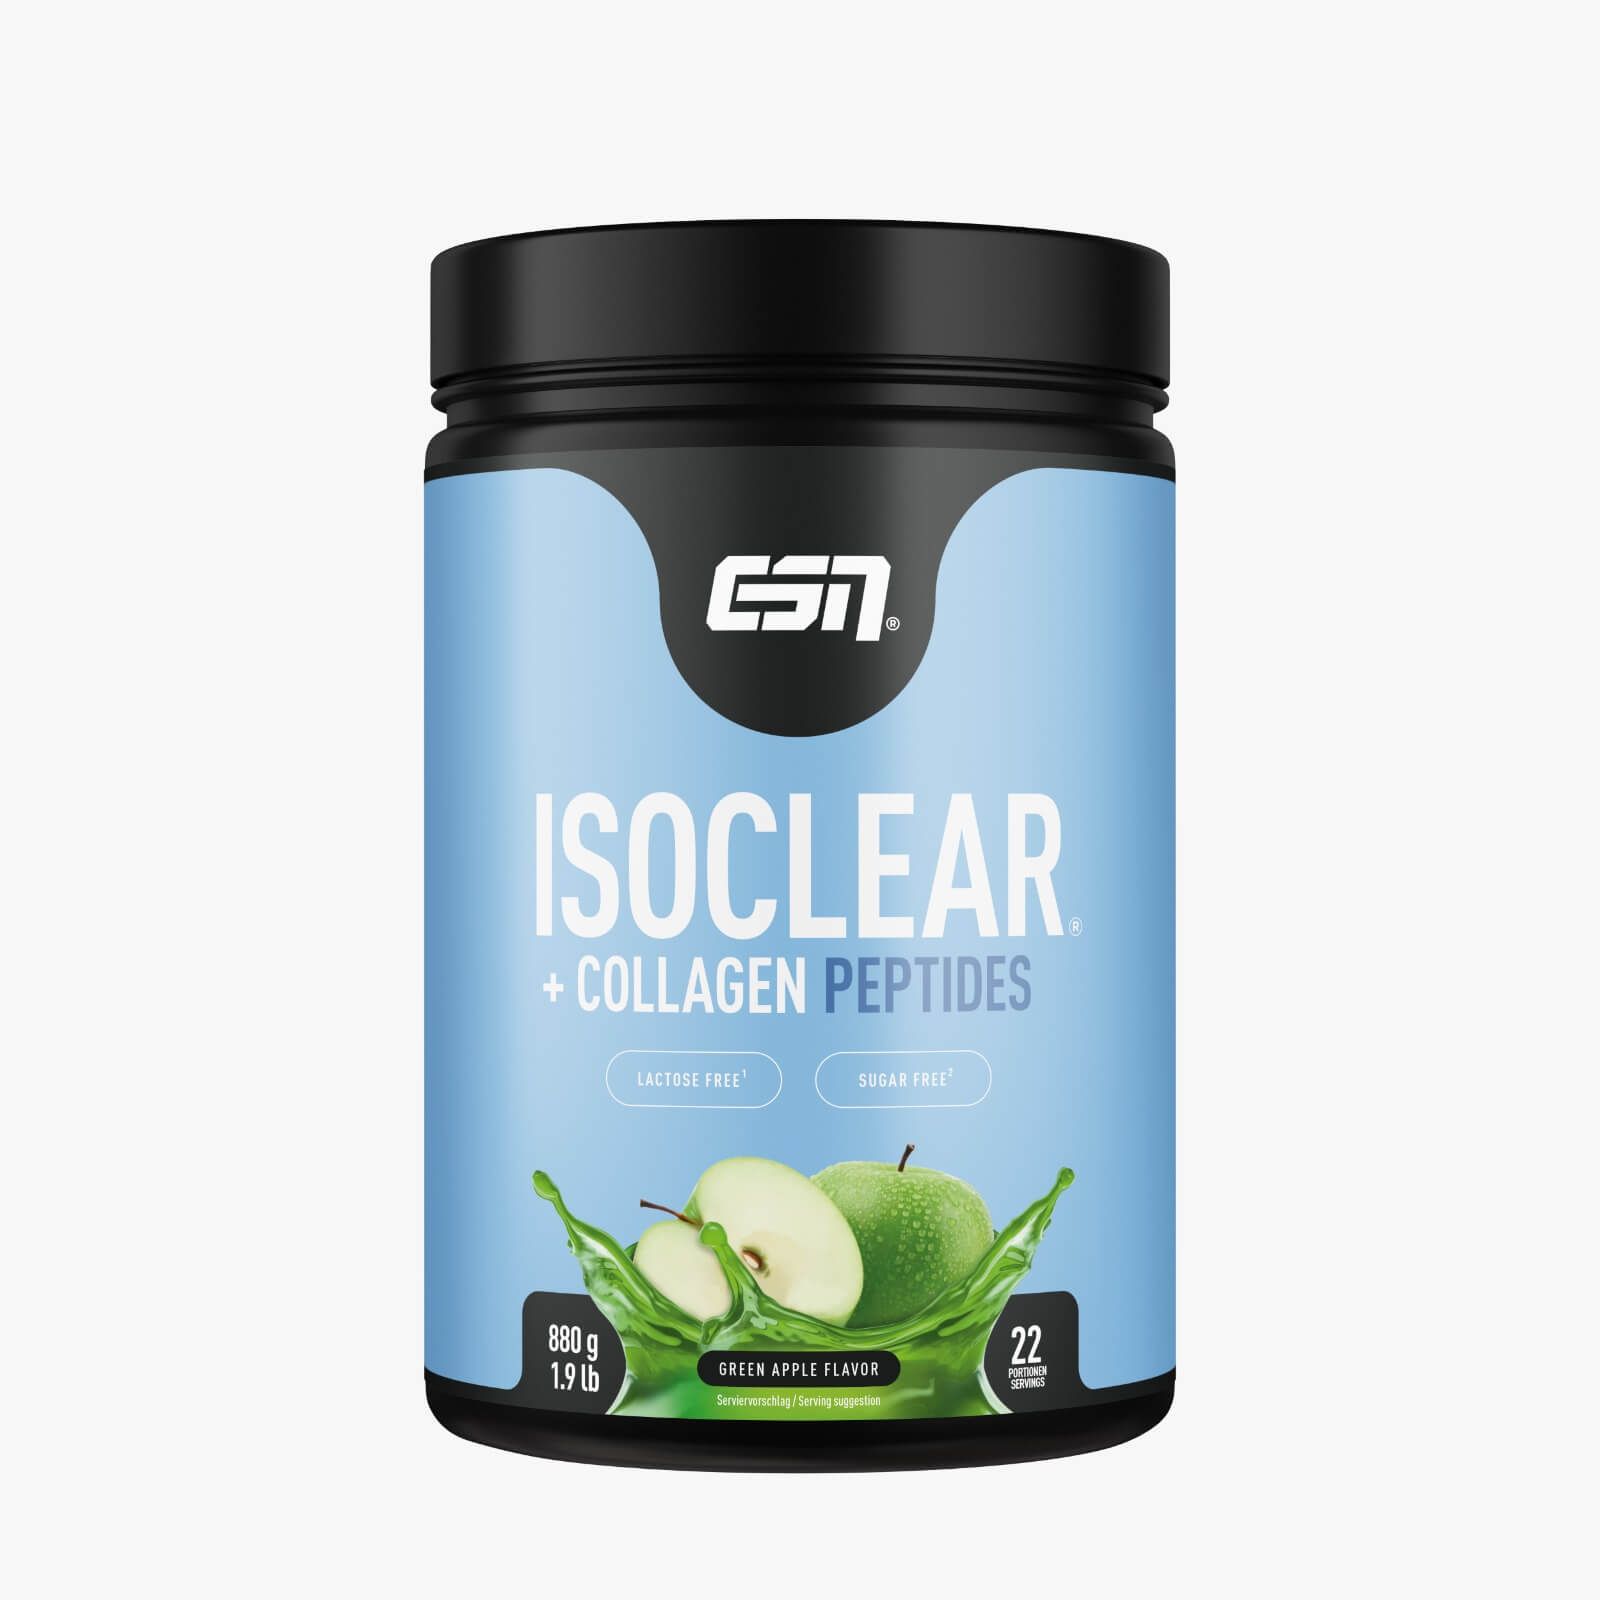 ESN 20% Proteinaktion mit Release des ISOCLEAR + Collagen Peptides | Suppligator.de